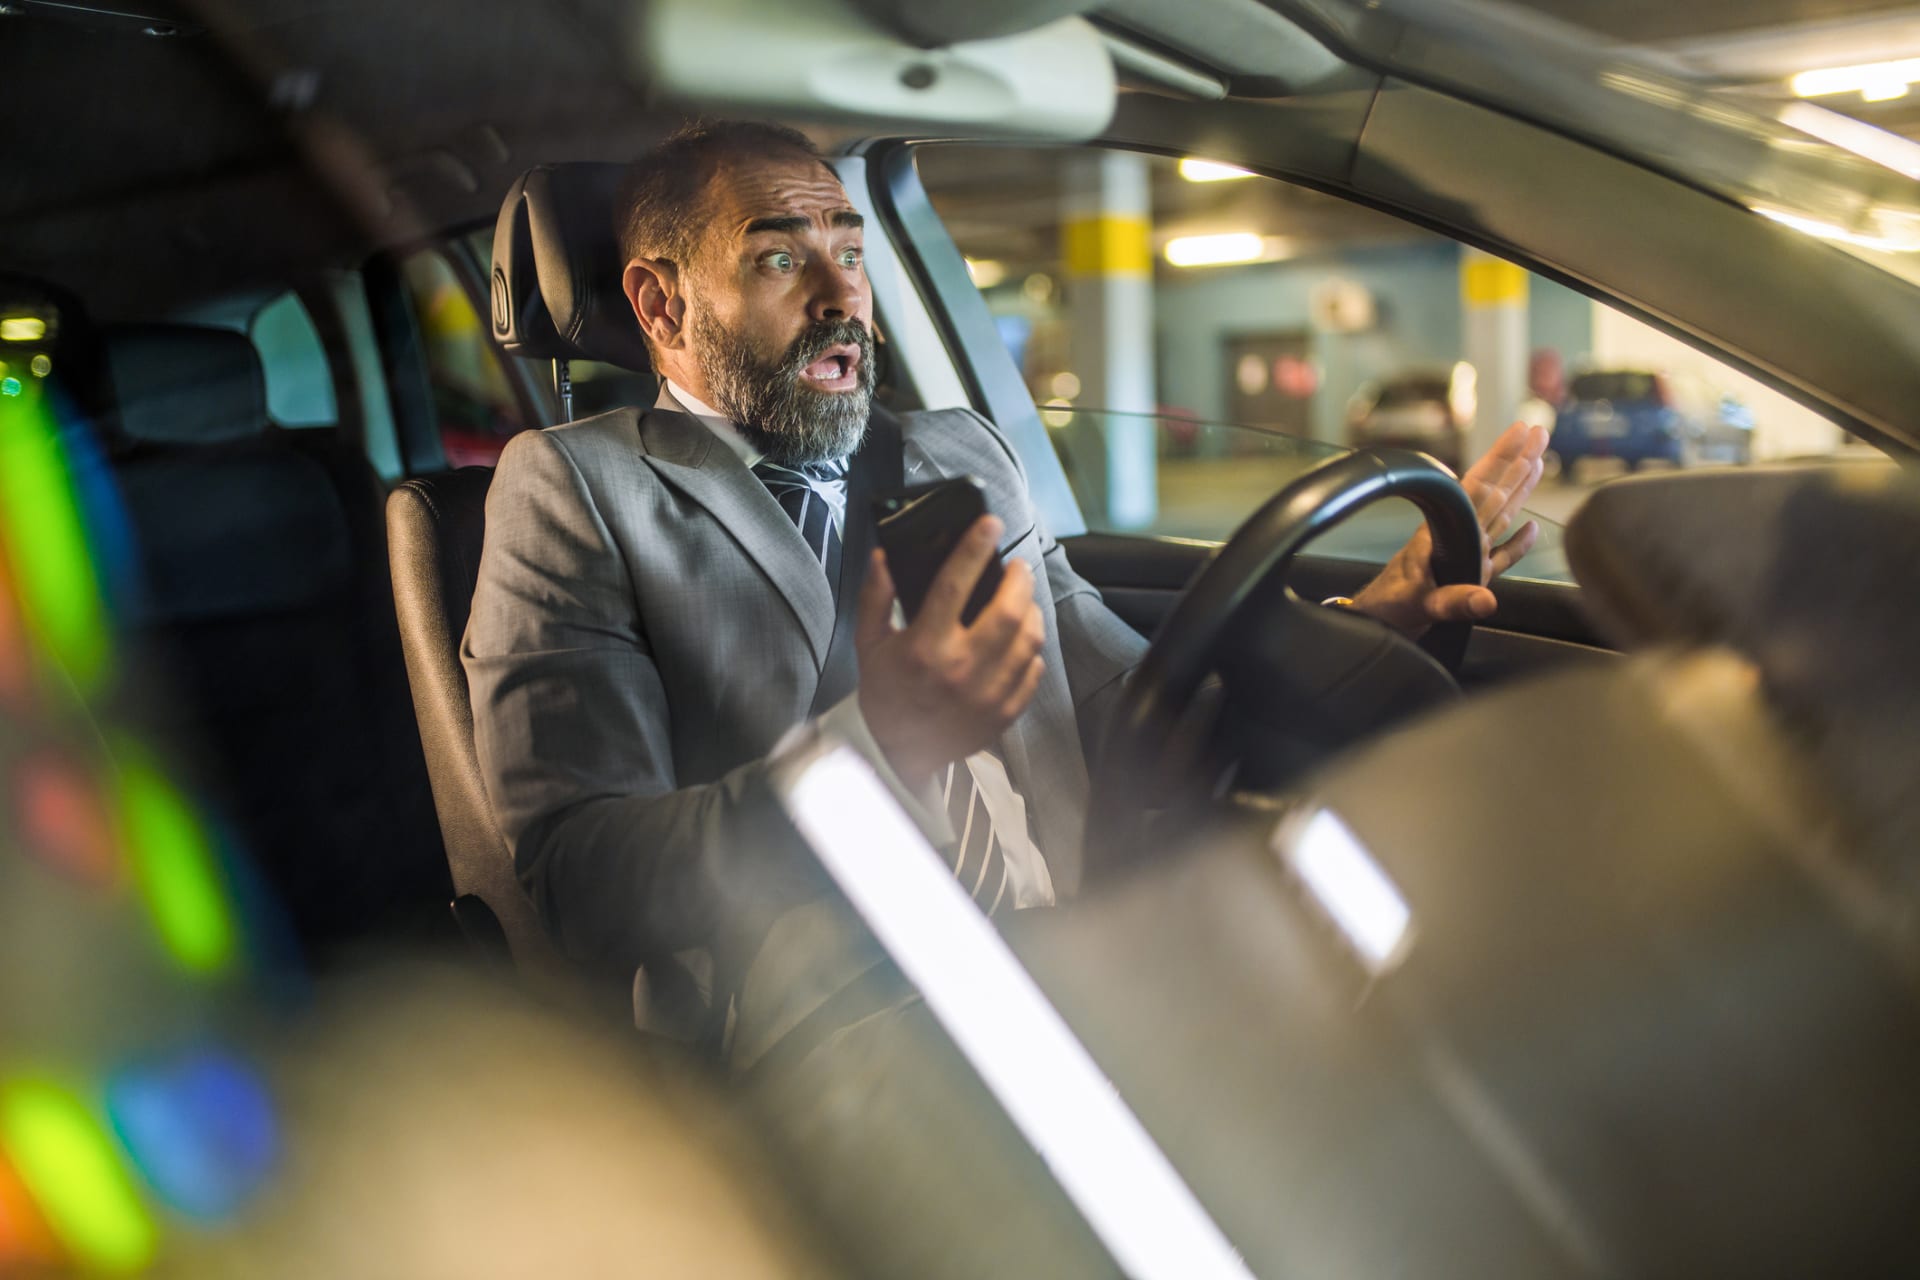 Aplikace má motivovat řidiče k nepoužívání telefonů během jízdy